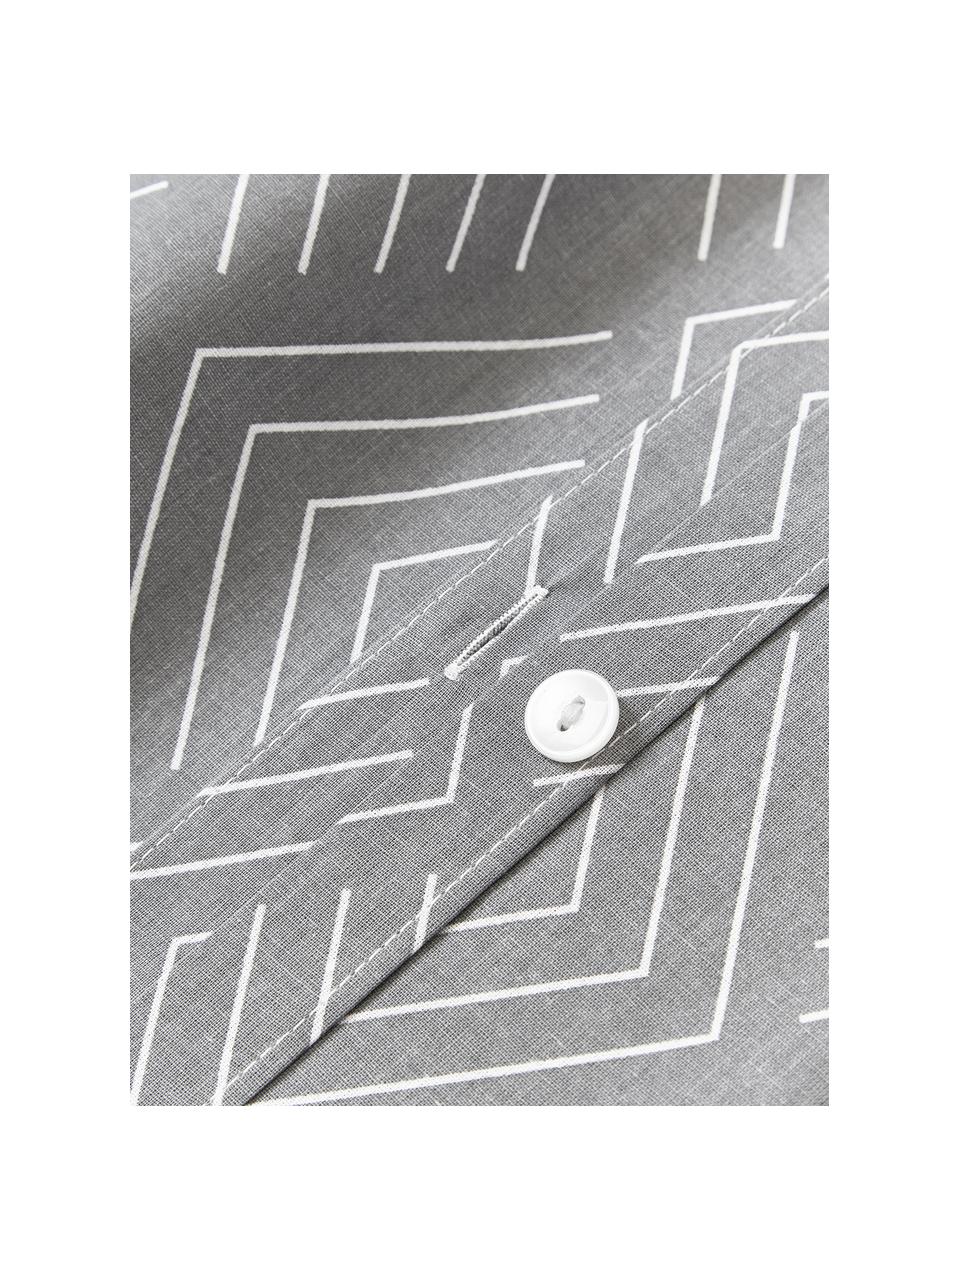 Taie d'oreiller en coton avec motif graphique Milano, Gris, larg. 50 x long. 70 cm